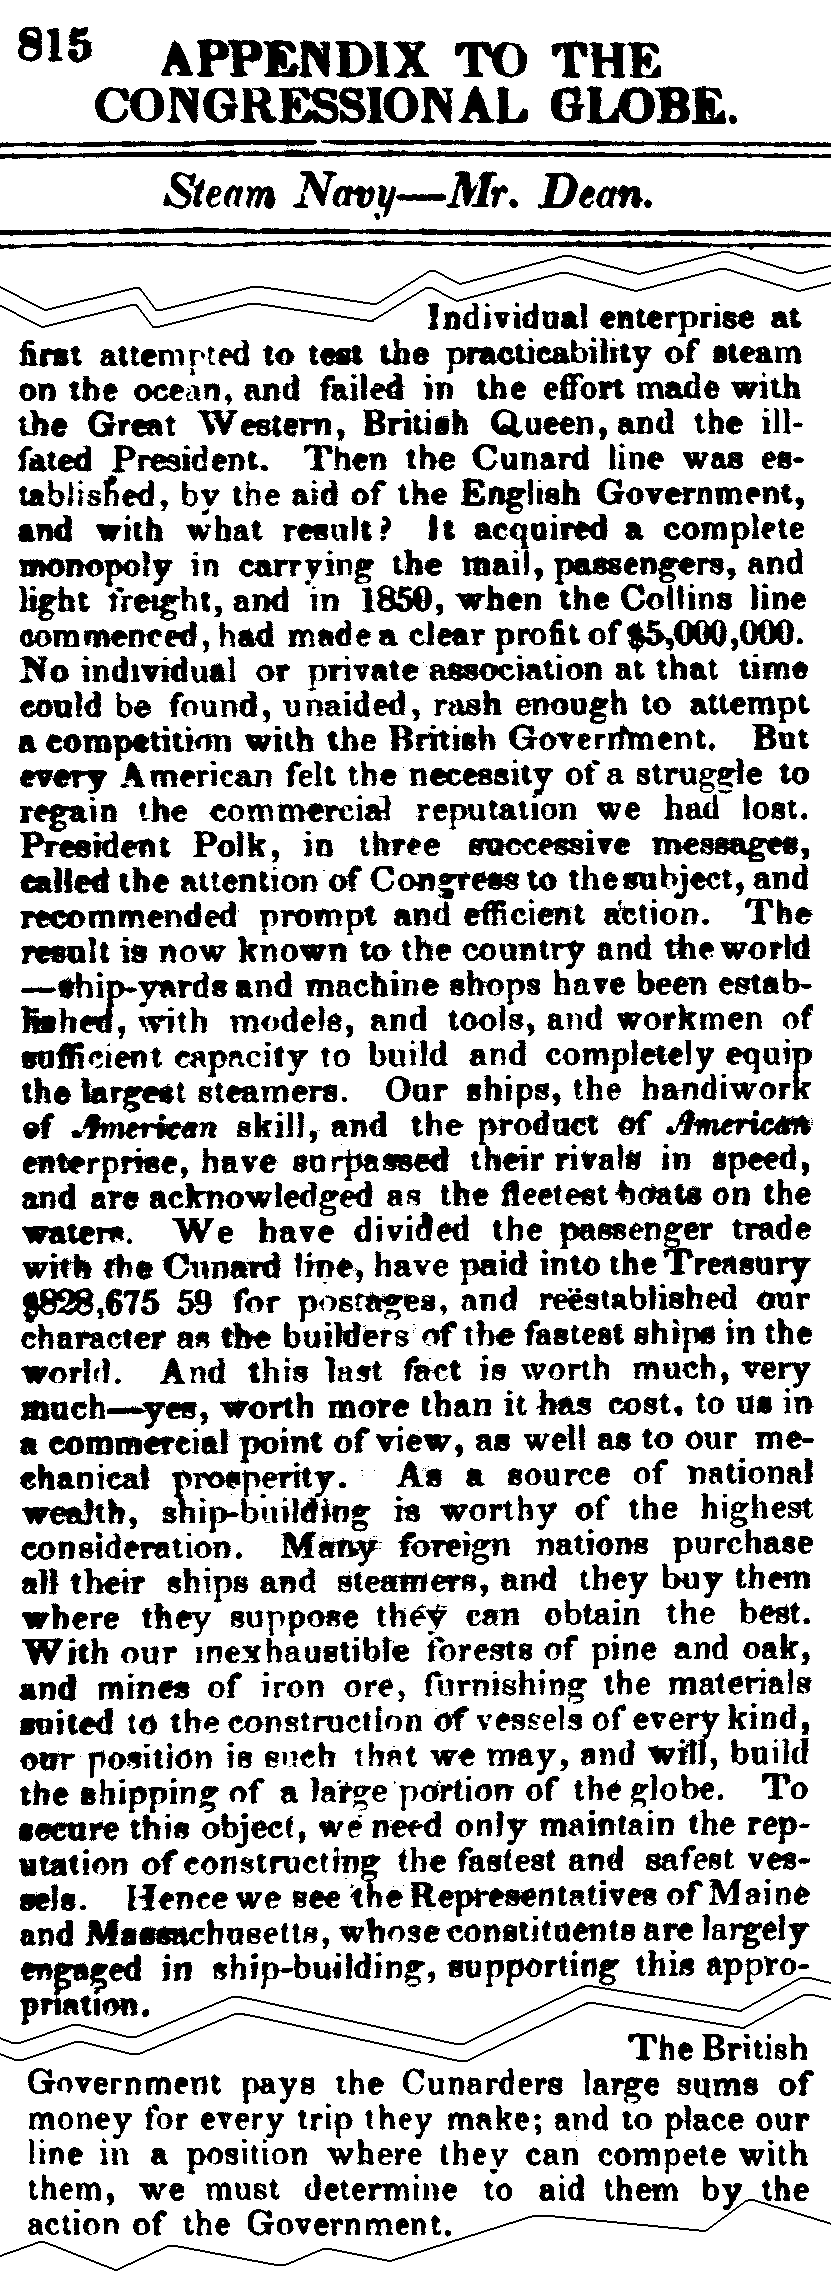 July 9, 1852: Cunard excerpts from Gilbert Dean's speech, page 815